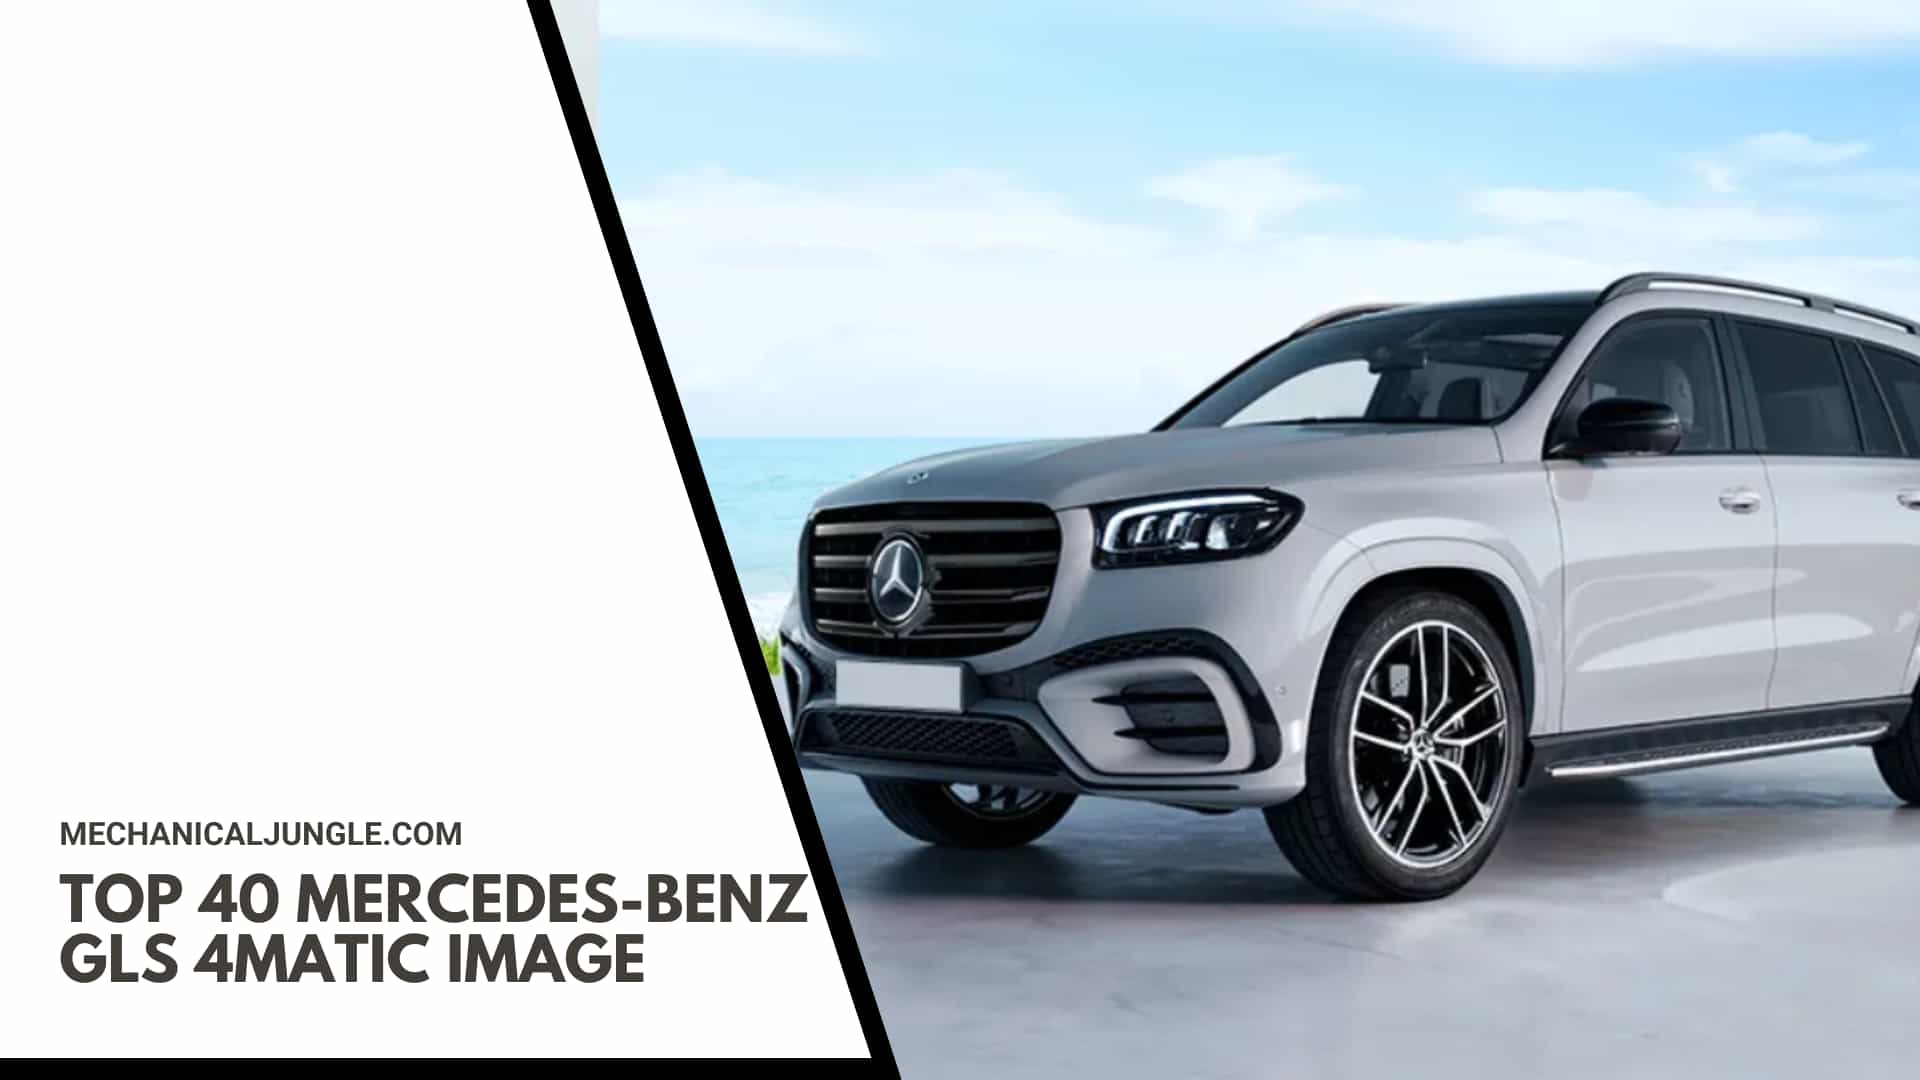 Top 40 Mercedes-Benz GLS 4MATIC Image